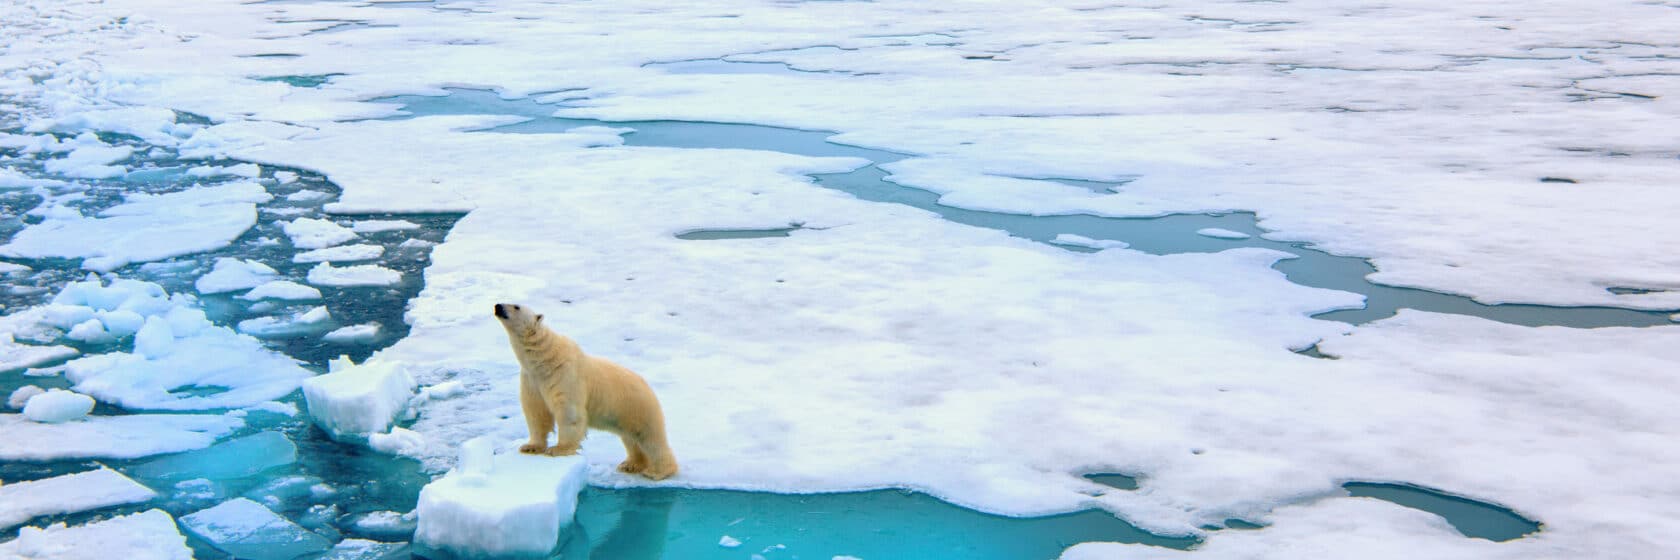 A polar bear in the arctic.